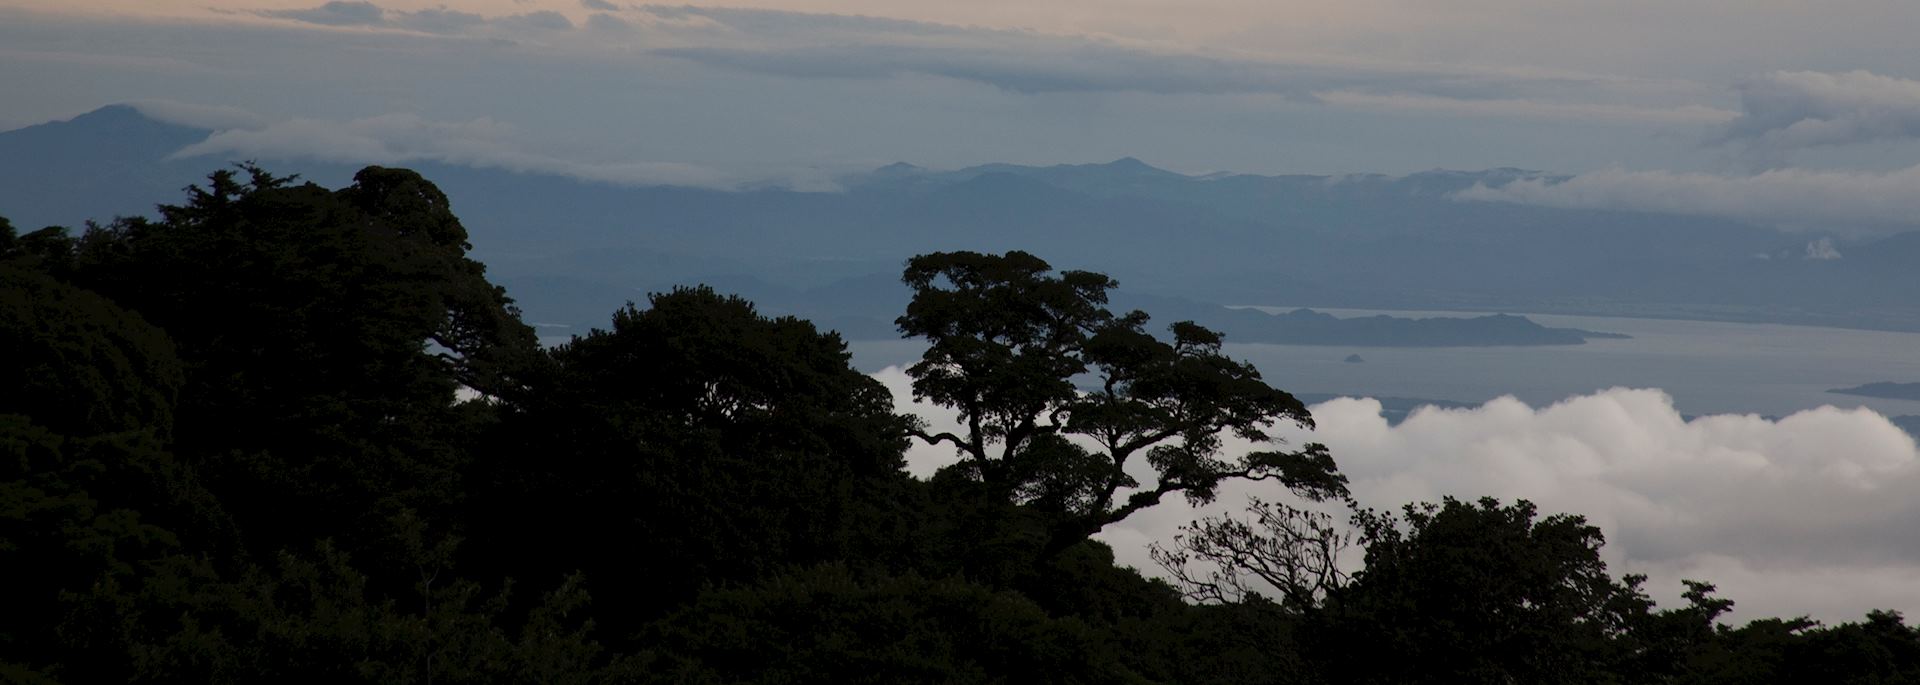 Monteverde at sunset